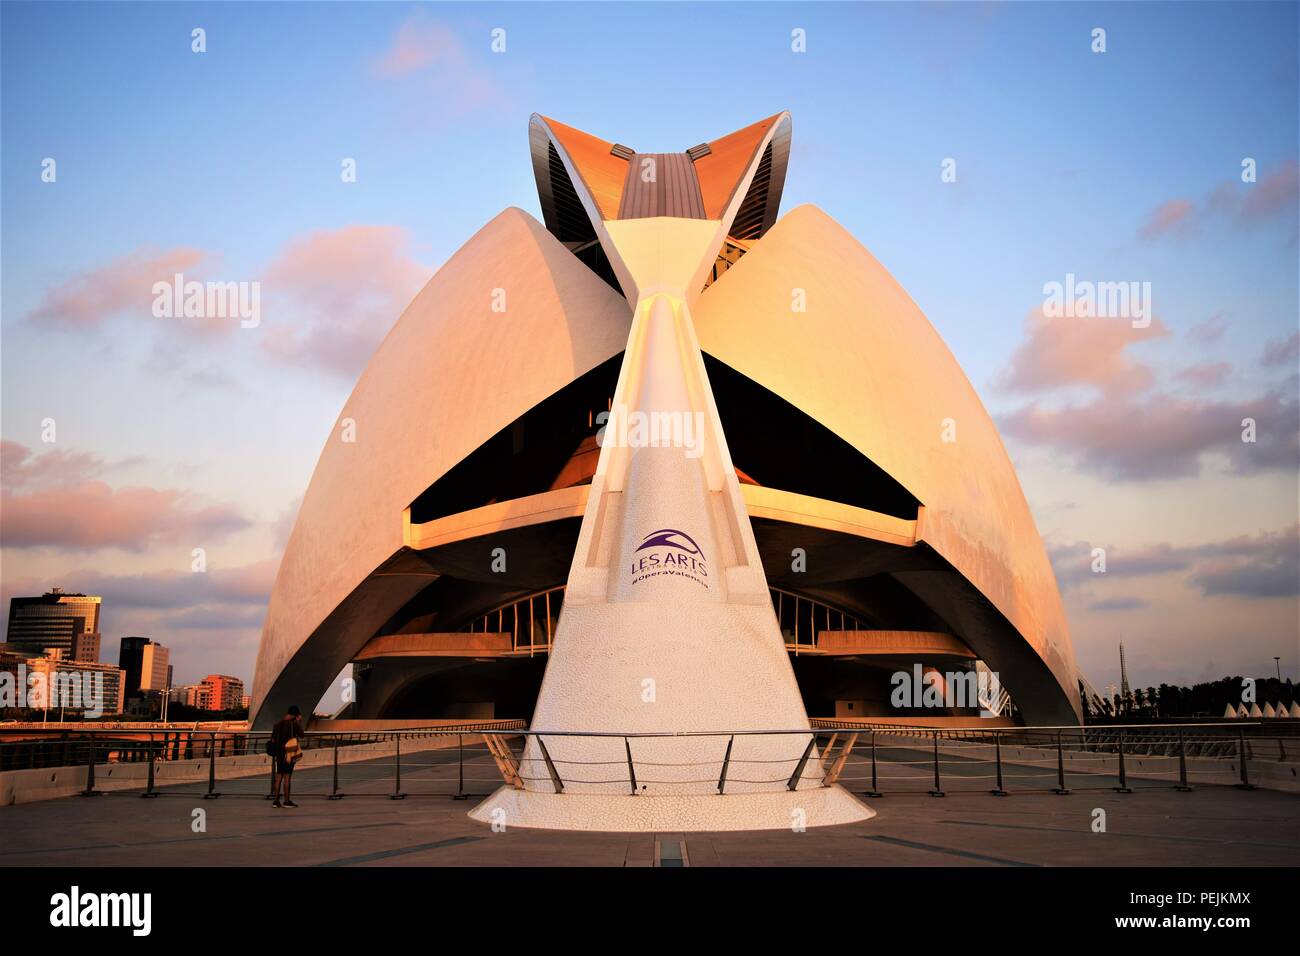 Valencia centro del arte y de la ciencia, por el arquitecto Santiago Calatrava, es una obra maestra del arte y de la arquitectura moderna, la atracción turística más popular. Foto de stock